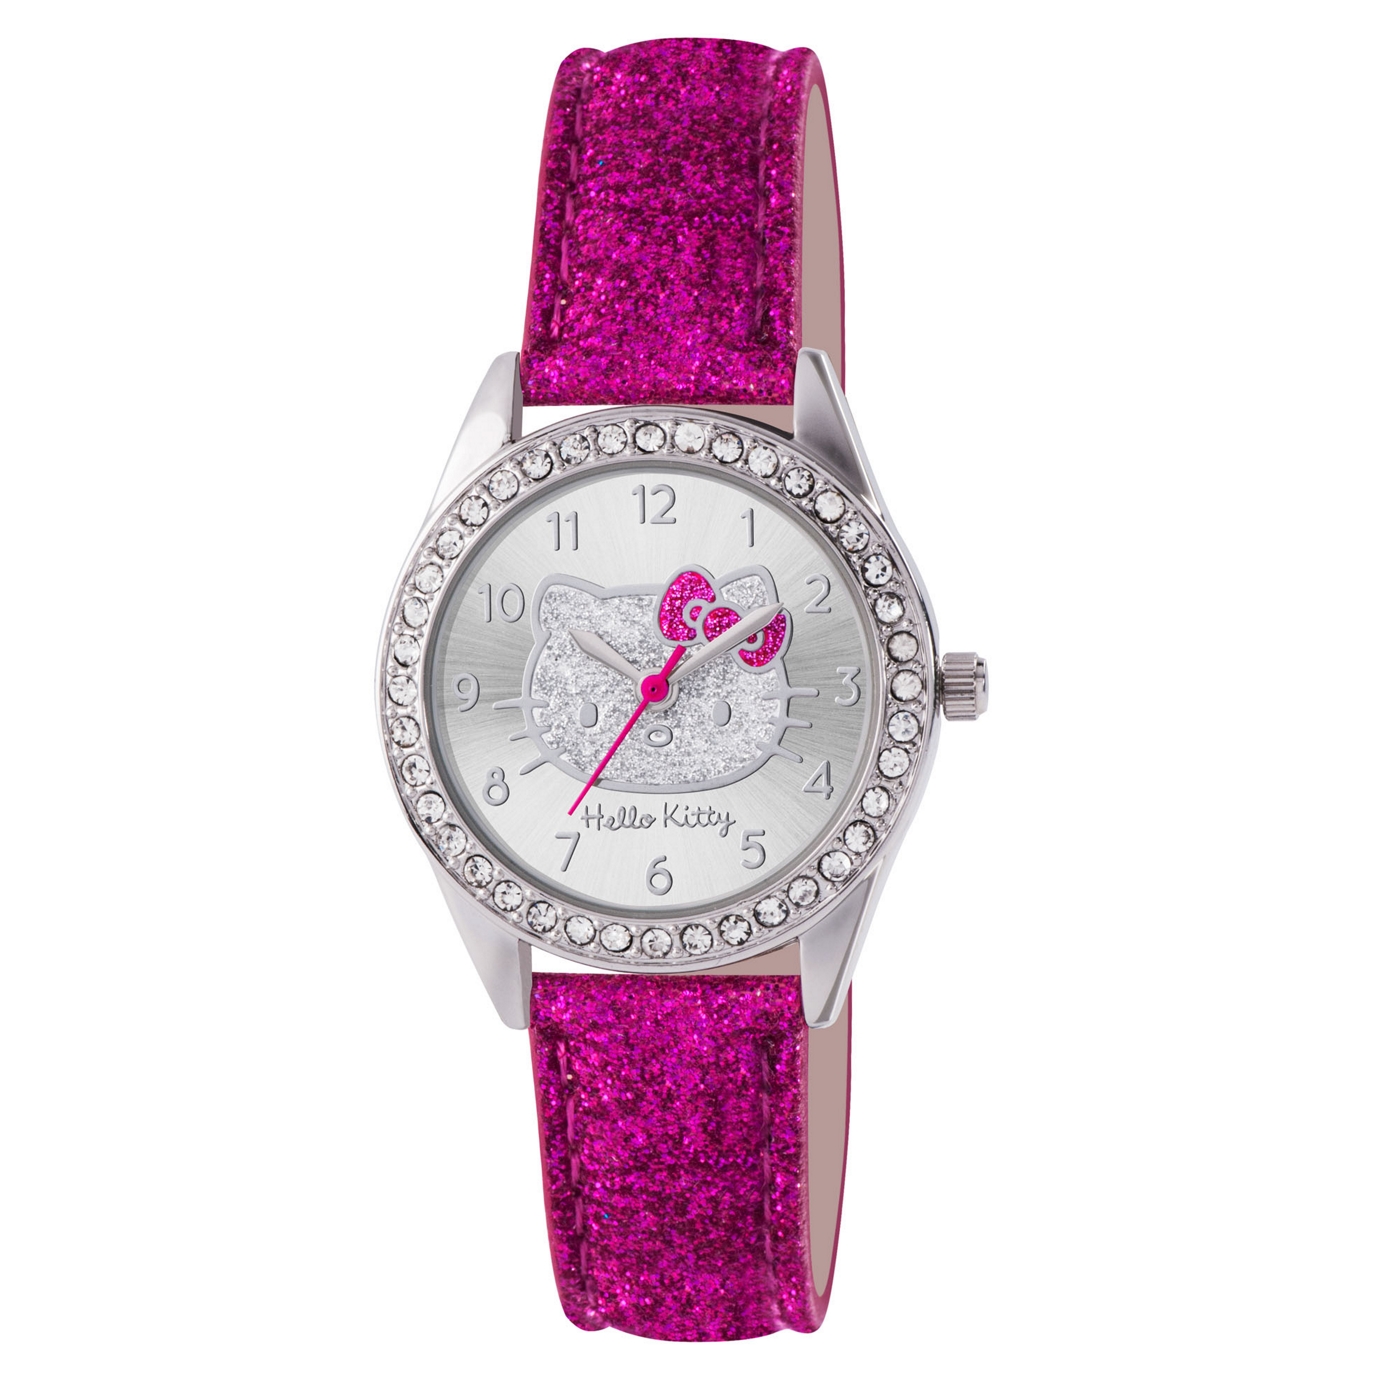 Hello Kitty Kids pink glitter PU strap analogue watch with stone set dial